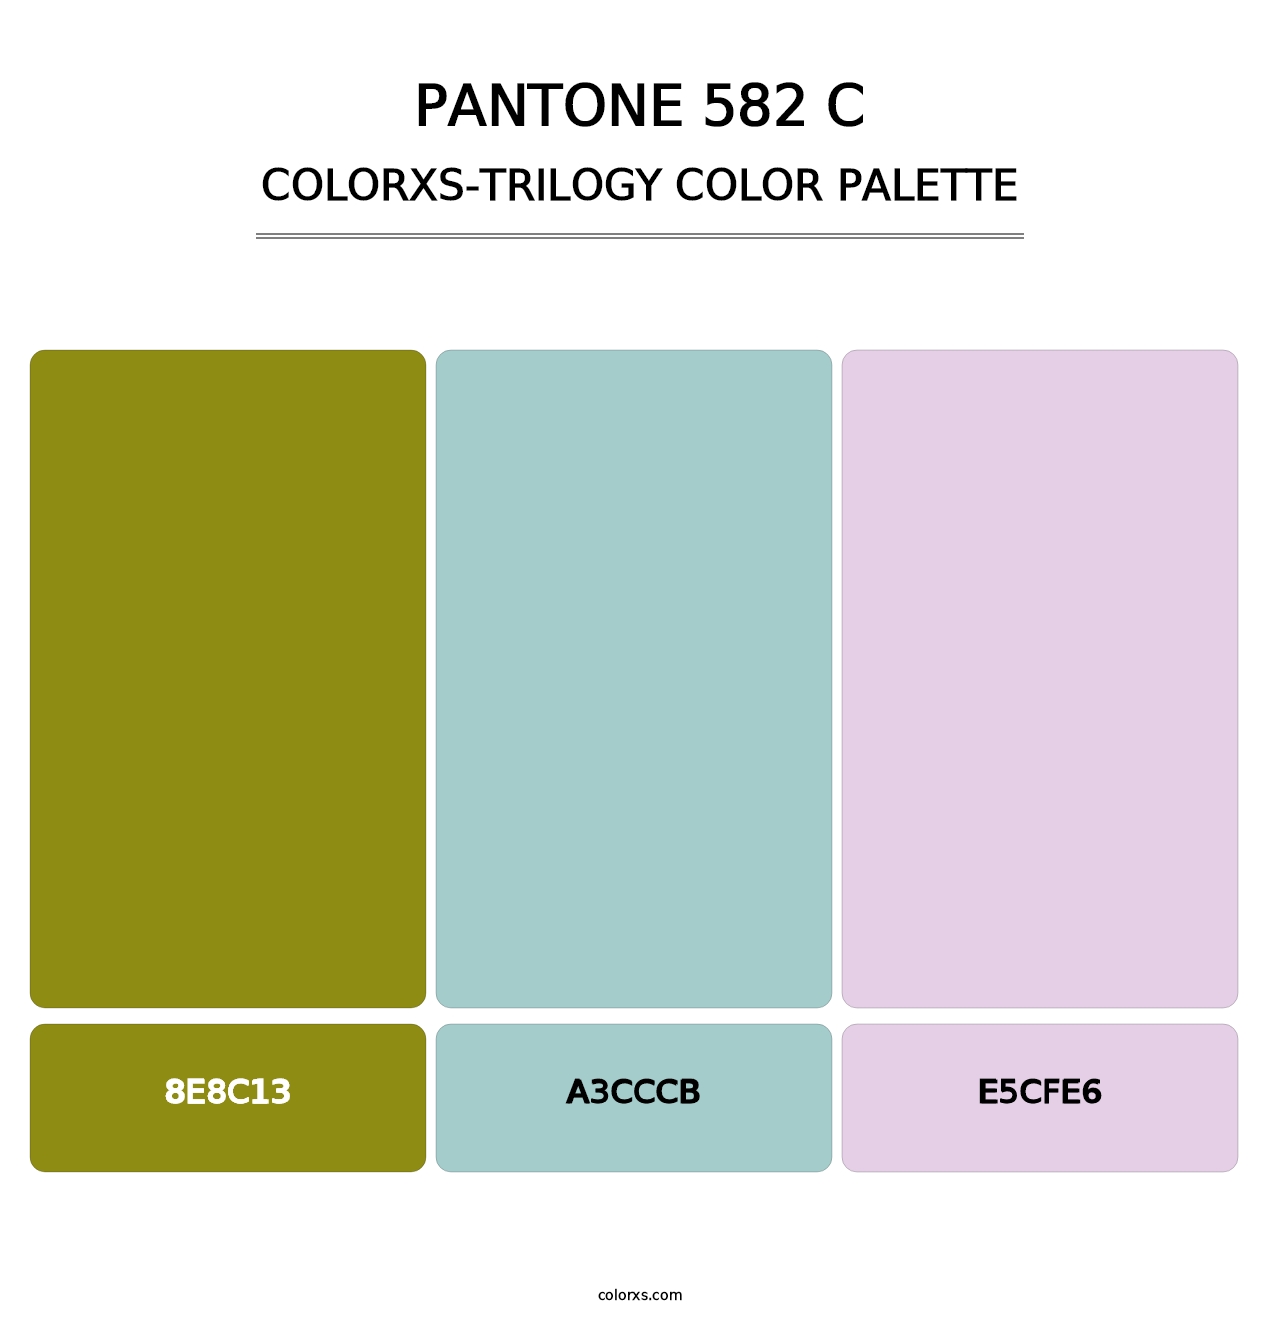 PANTONE 582 C - Colorxs Trilogy Palette